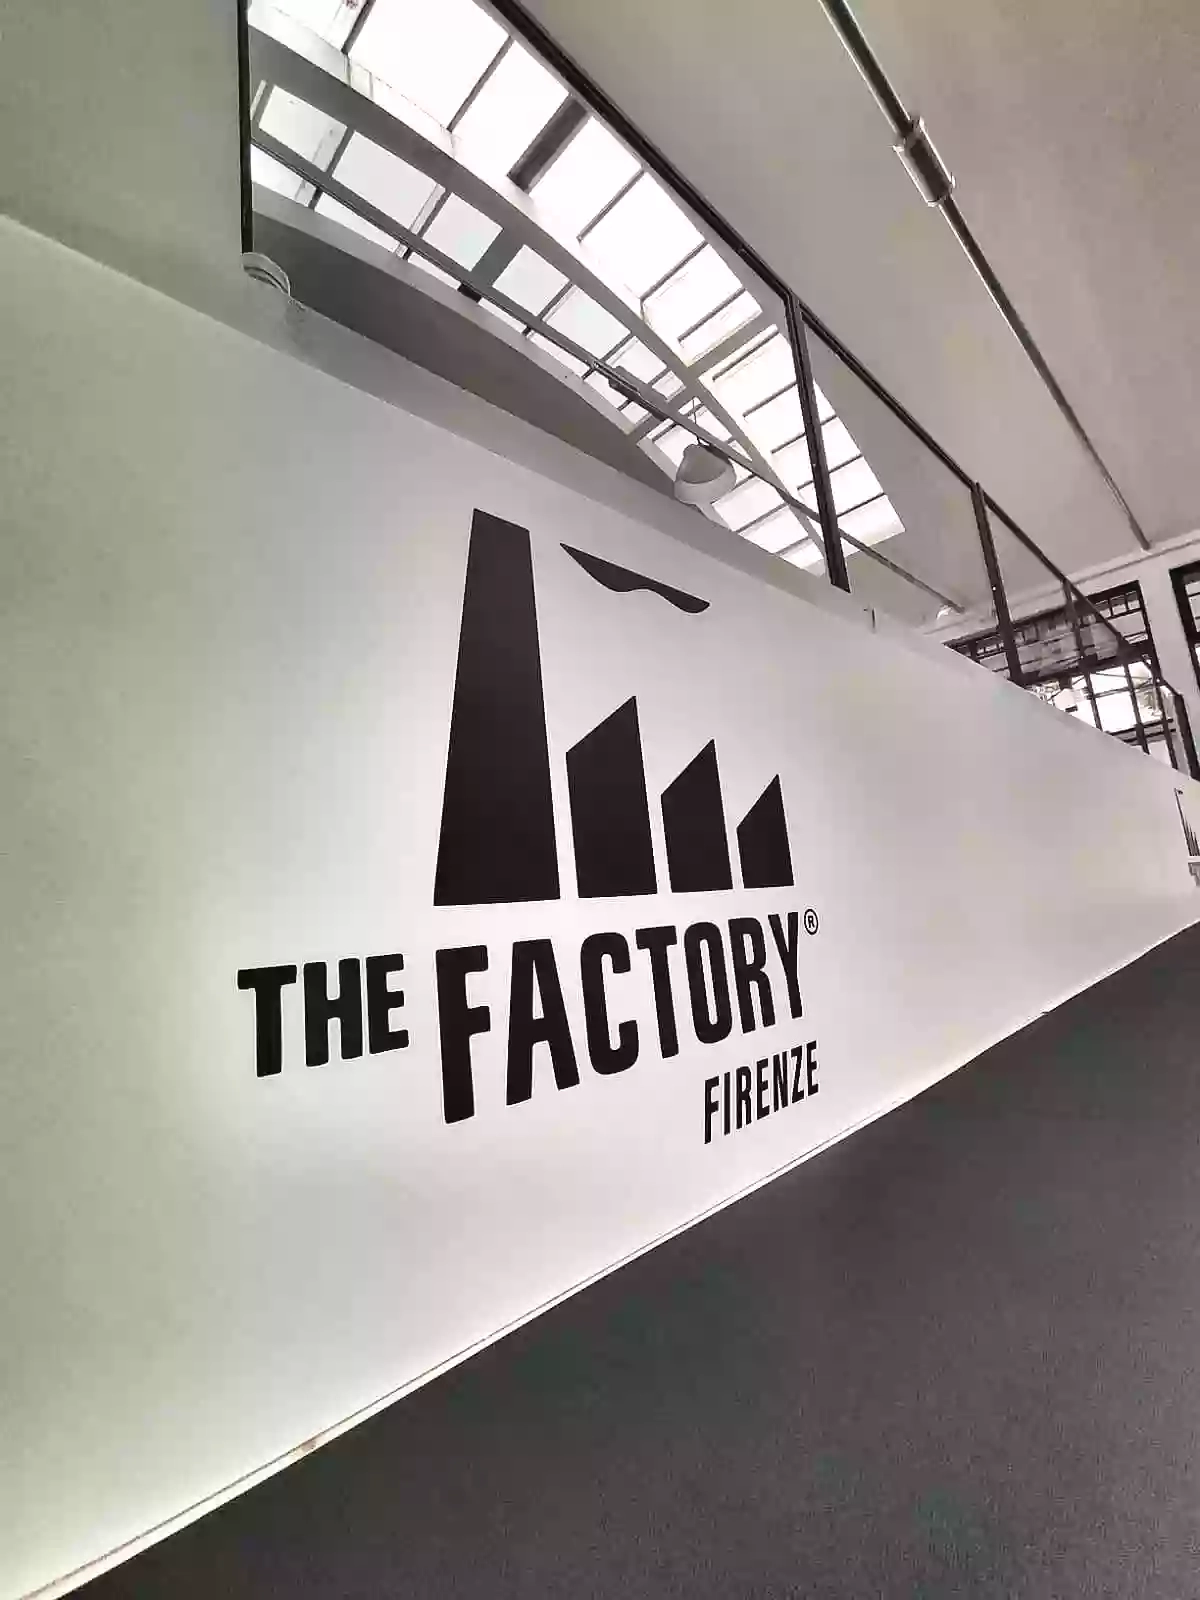 The Factory Firenze